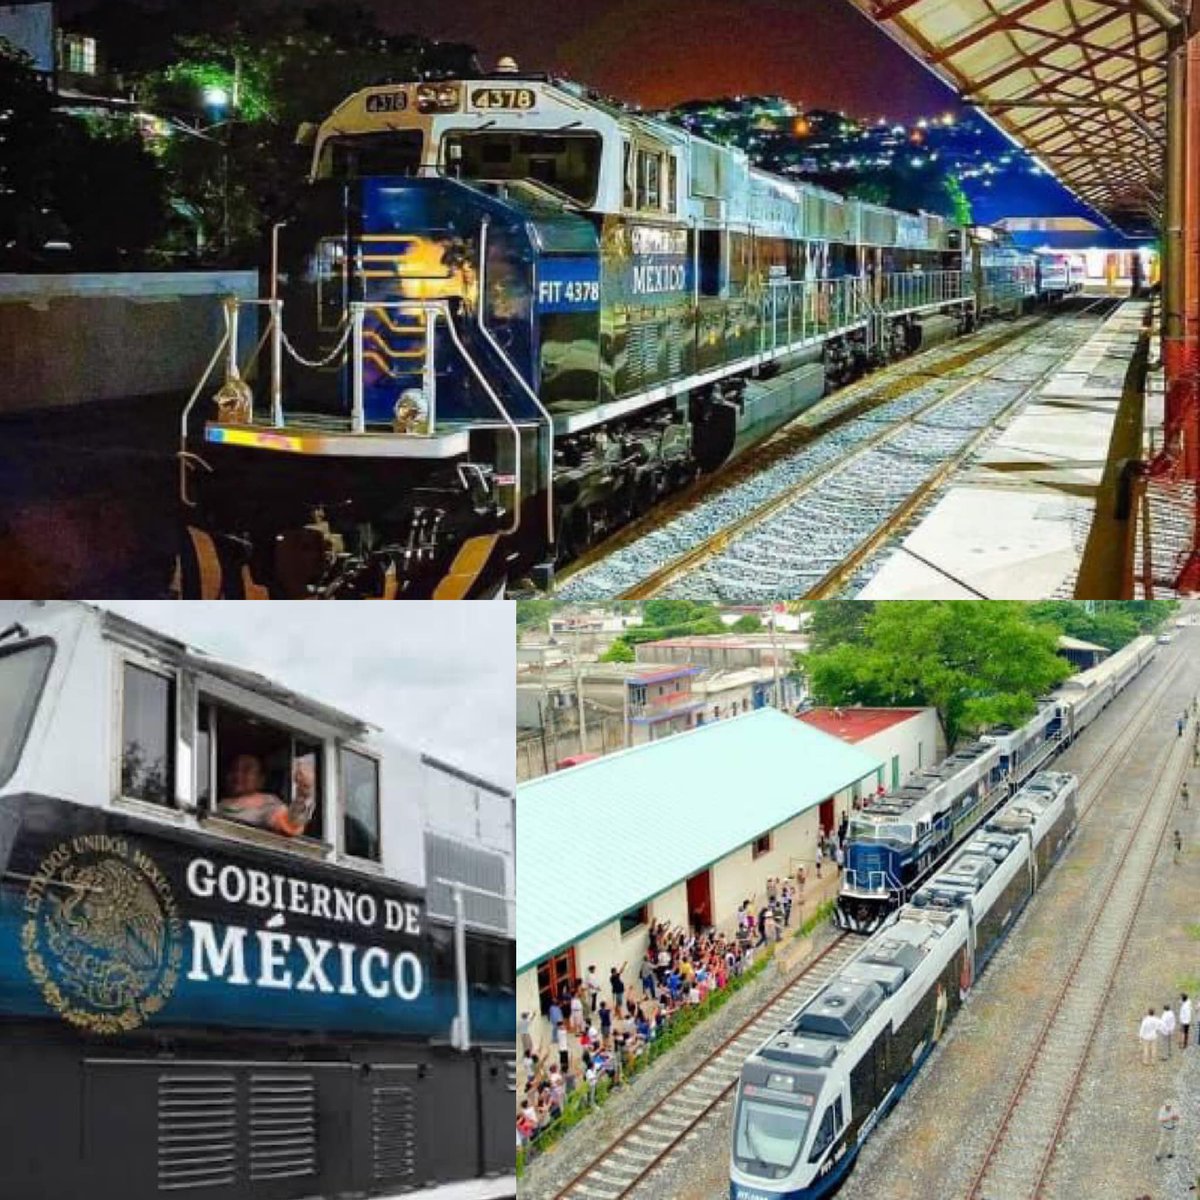 #Destacados | Mañana se inaugurará el Tren Interoceánico🚆 y resulta que viajar en él será más económico🫰🏼 que hacerlo en autobús

El tren va de Salina Cruz, Oaxaca a Coatzacoalcos, Veracruz. Conectará el #GolfodeMéxico con el #OcéanoPacífico.